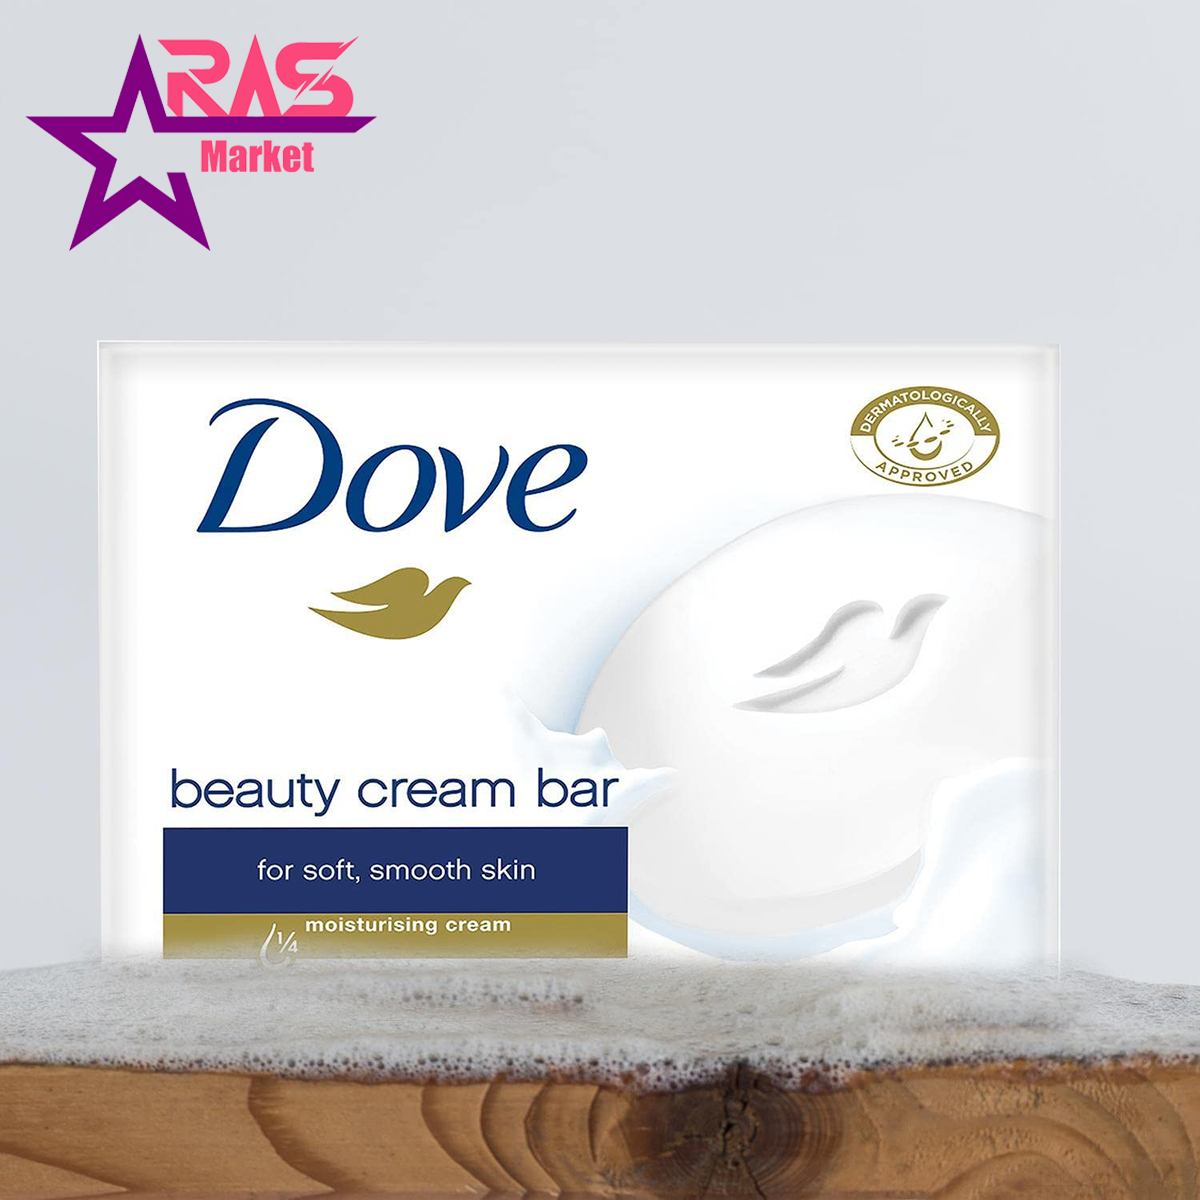 صابون داو مدل Beauty Cream Bar لطافت بخش 100 گرم ، خرید اینترنتی محصولات شوینده و بهداشتی ، صابون زیبایی داو